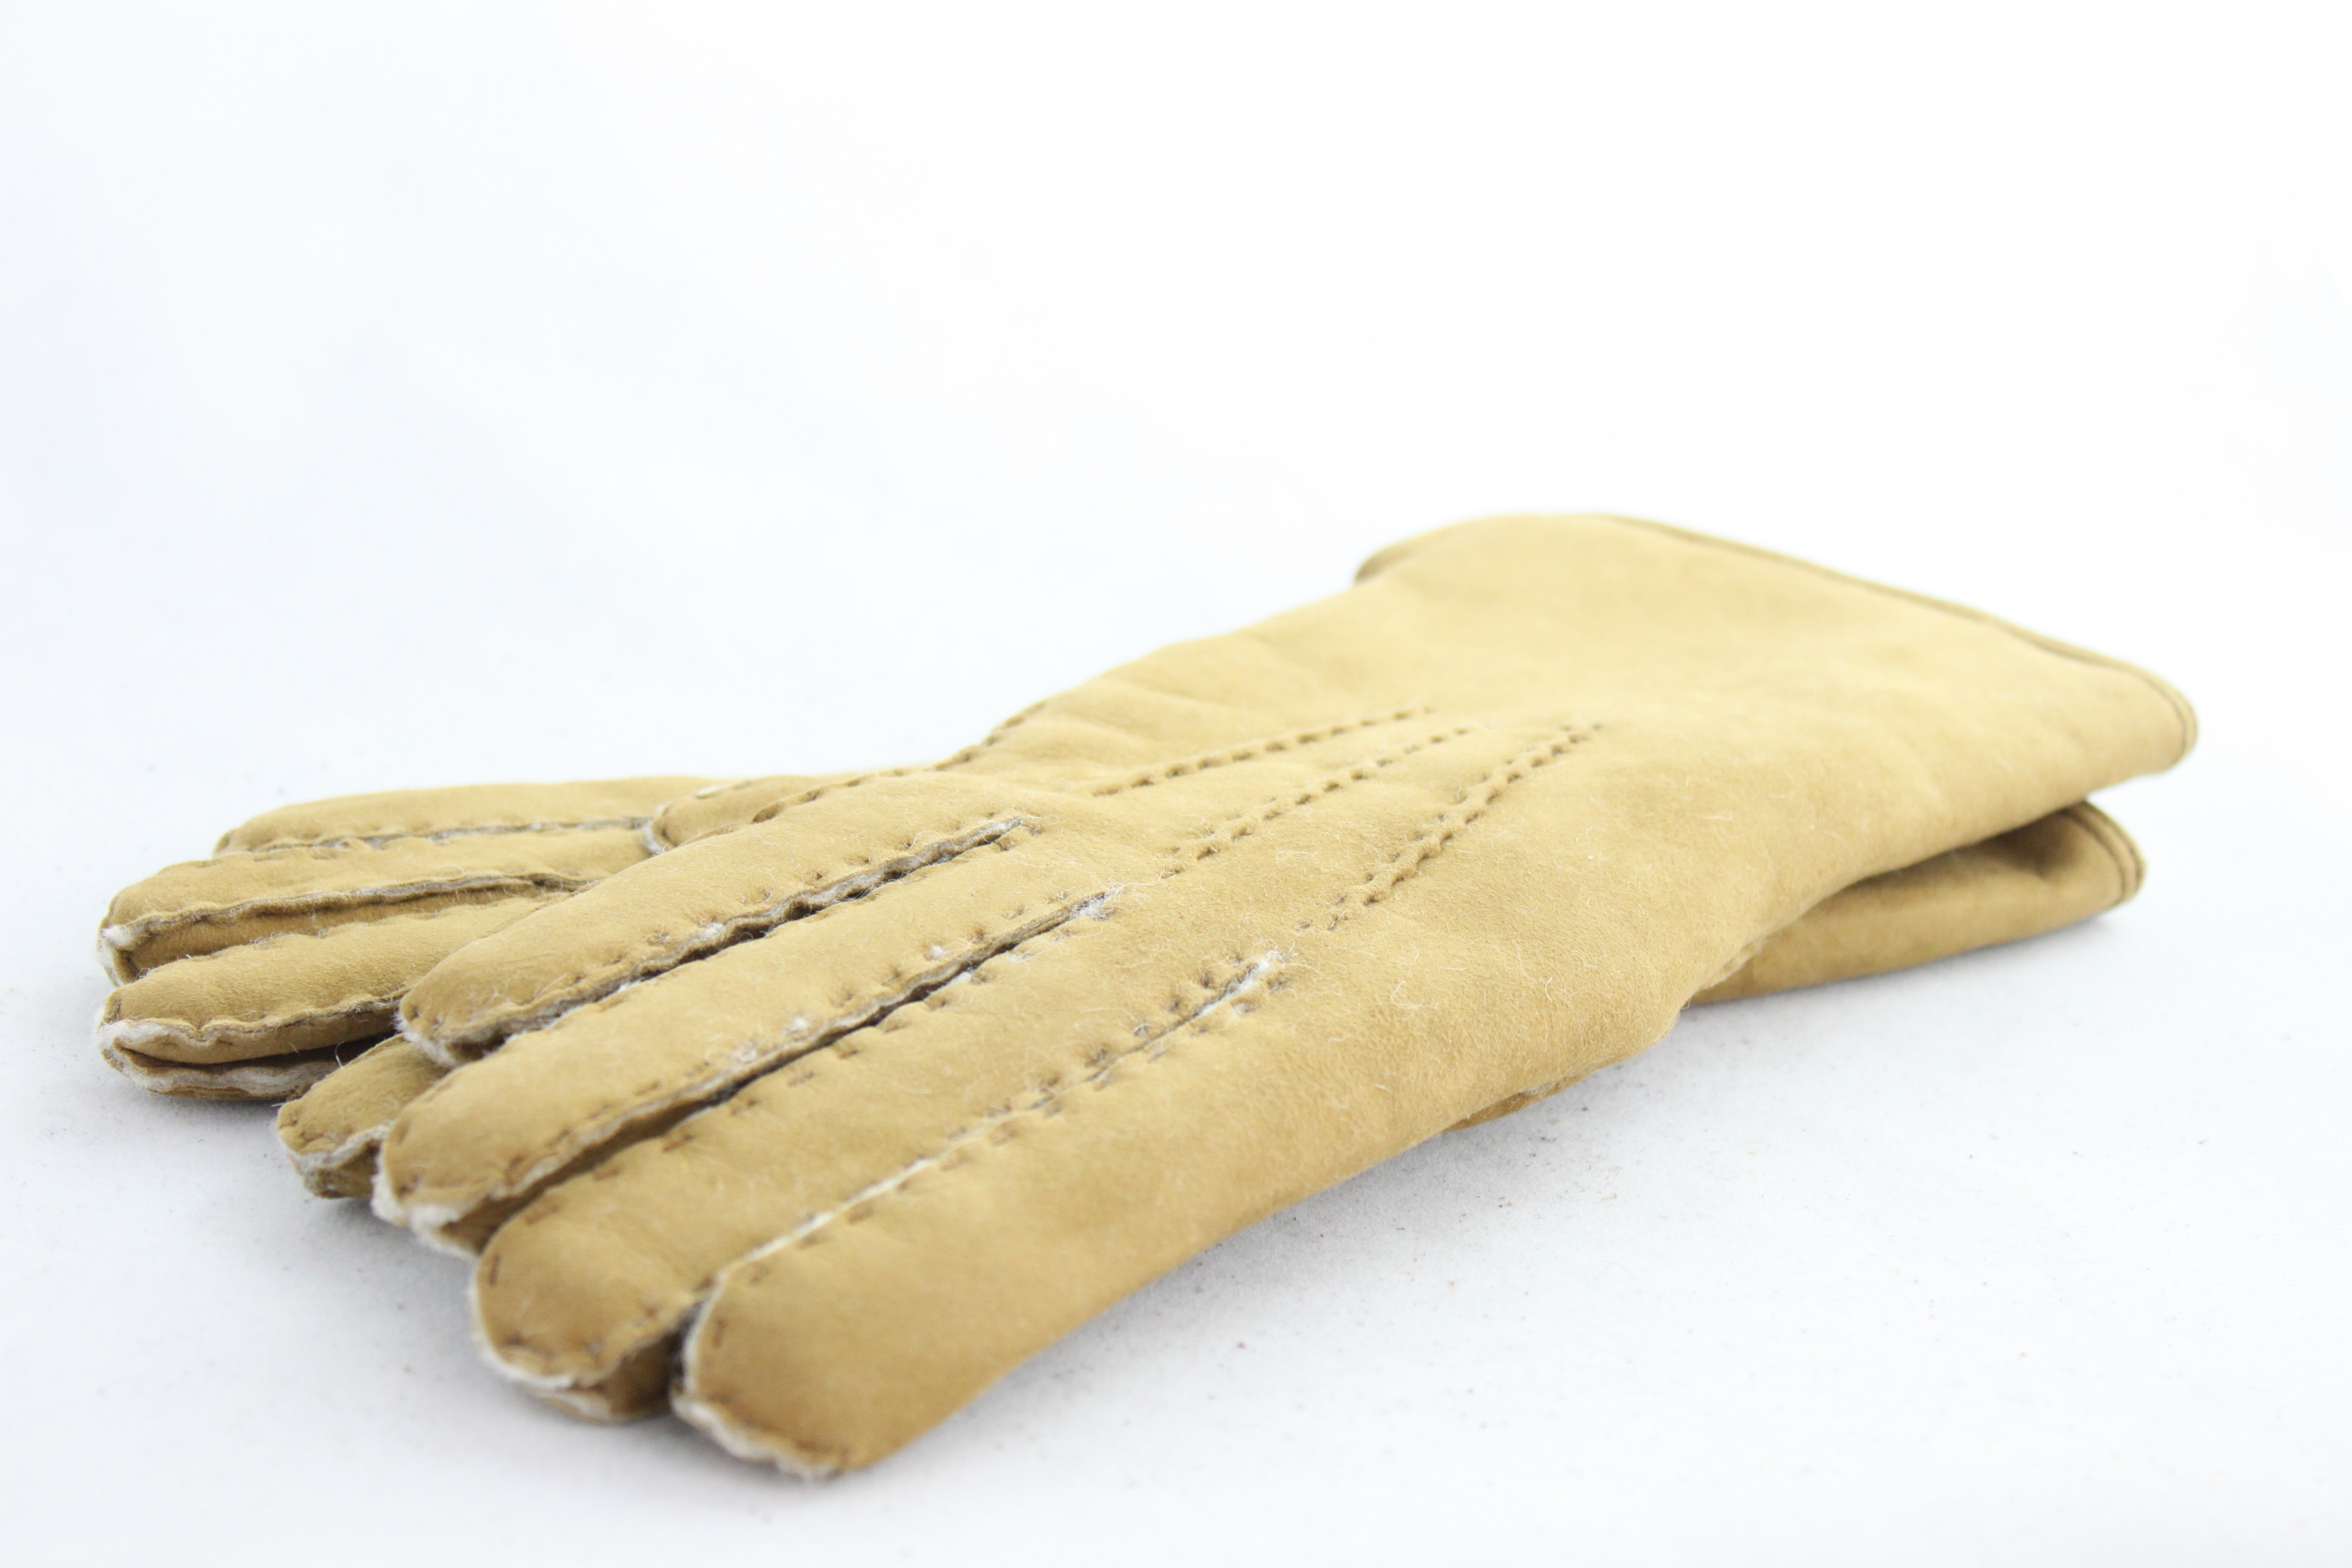 lambskin gloves ladies